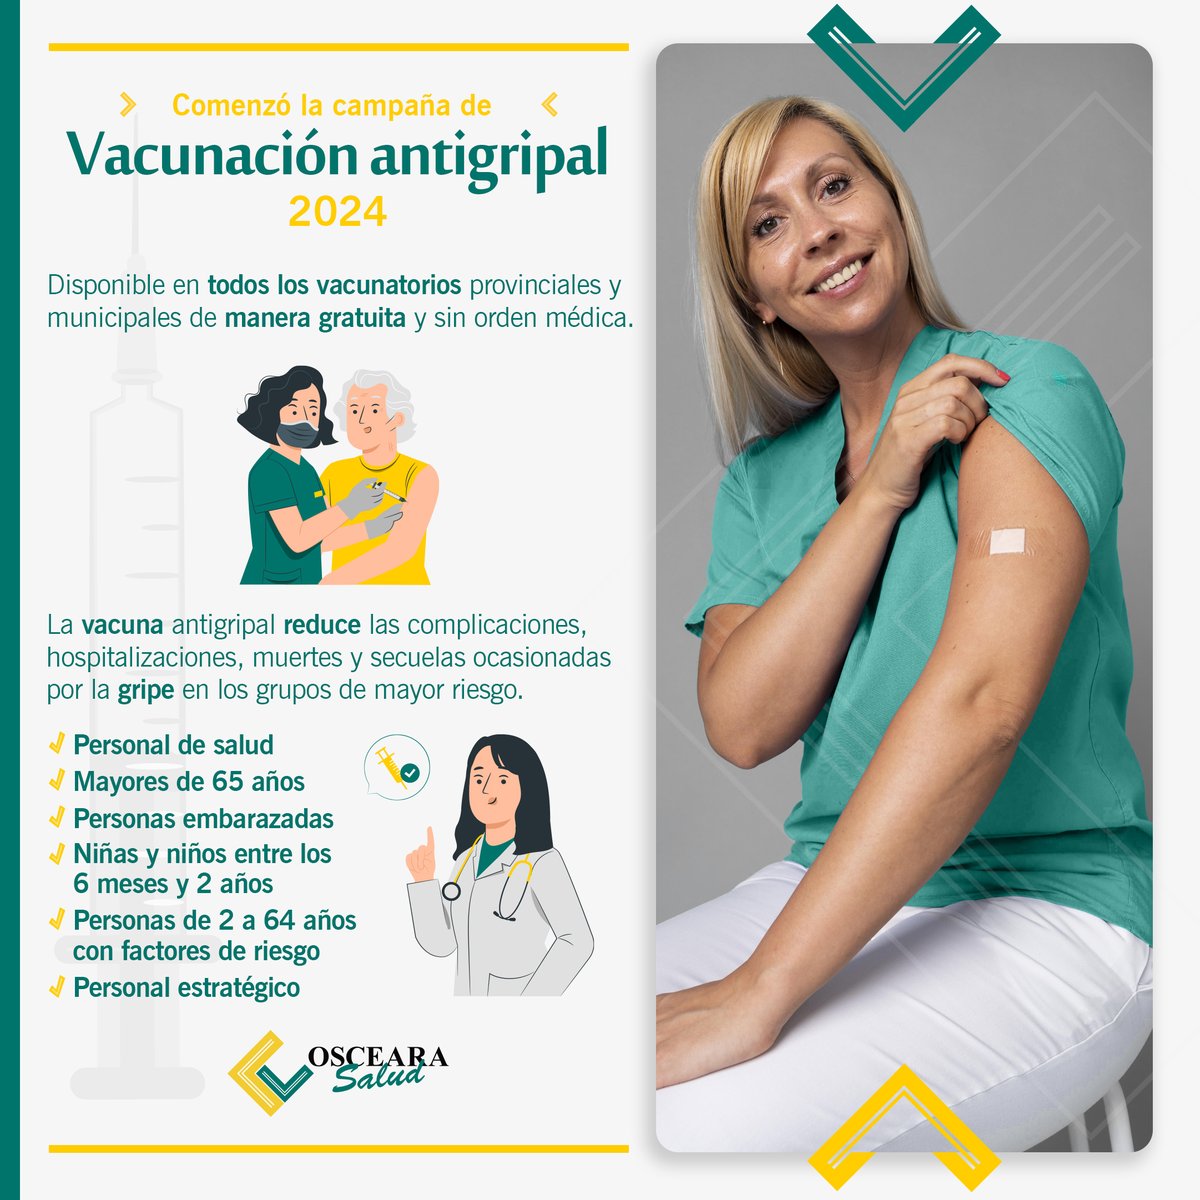 Campaña de vacunación antigripal 2024 🛡️

💉 🦠Aplicándote la vacuna, tenés una mayor protección durante el invierno. Si pertenecés a alguno de estos grupos, podes recibir la inmunización gratuitamente en todo el país 🥶🤧

#VacunaciónAntigripal #ProtecciónParaTodos #SaludMental